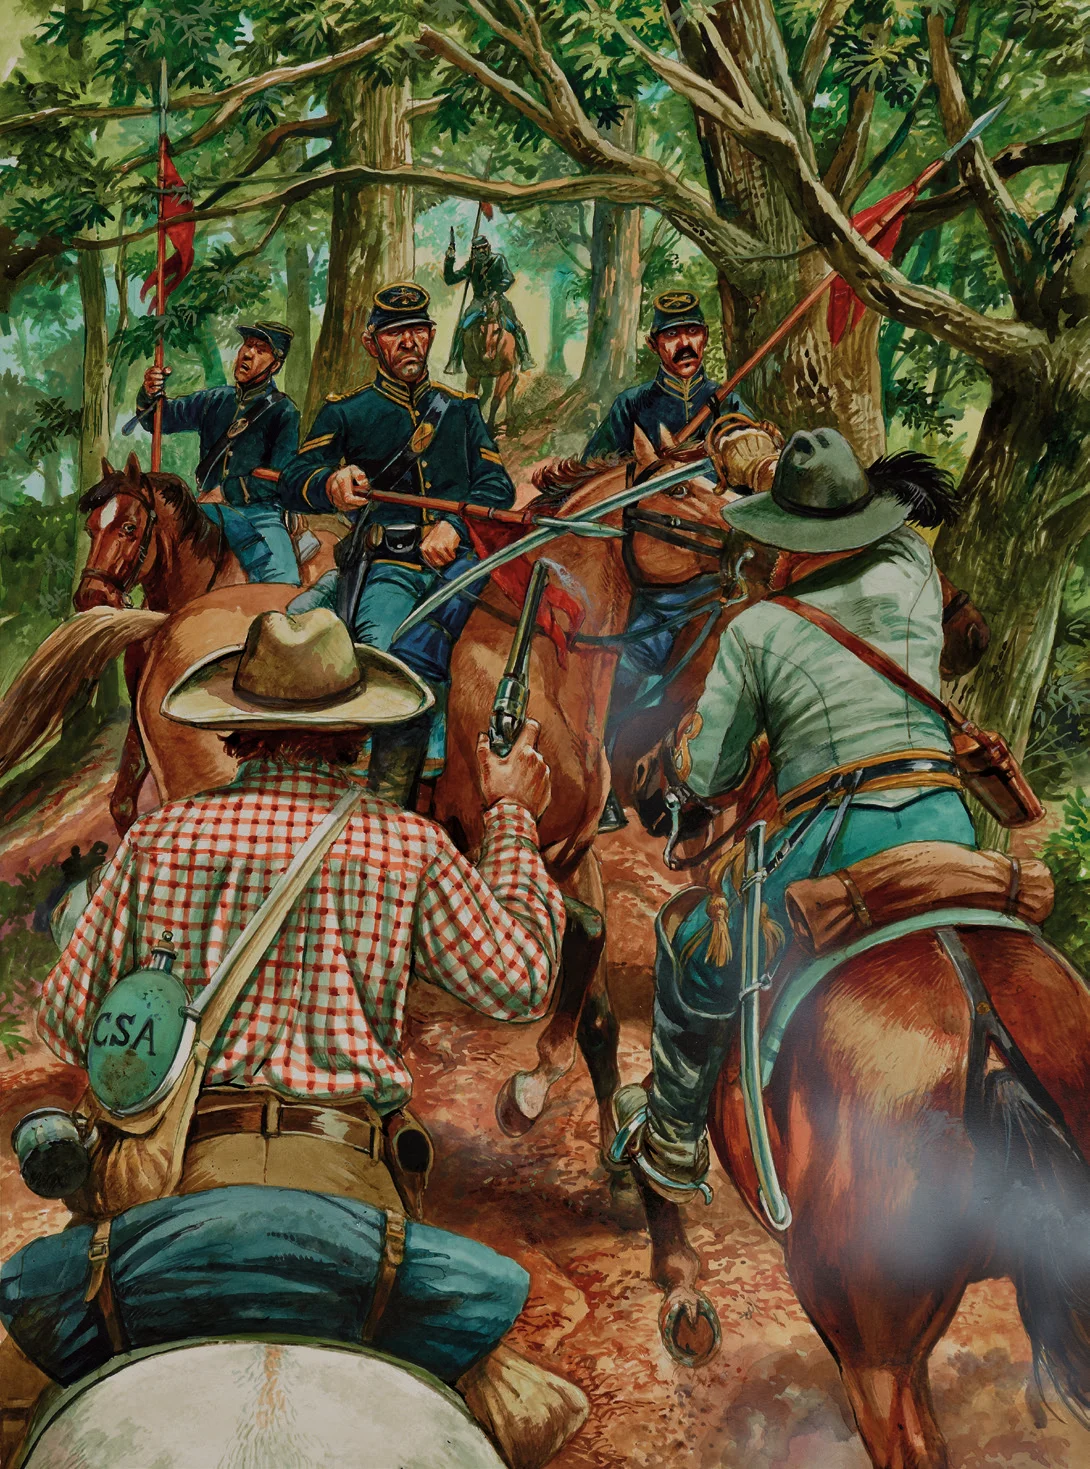 联盟军还拥有枪骑兵队伍，但是他们在弗吉尼亚州这样的森林地区没什么用途，笨重的长枪并不是灵活的军刀的对手